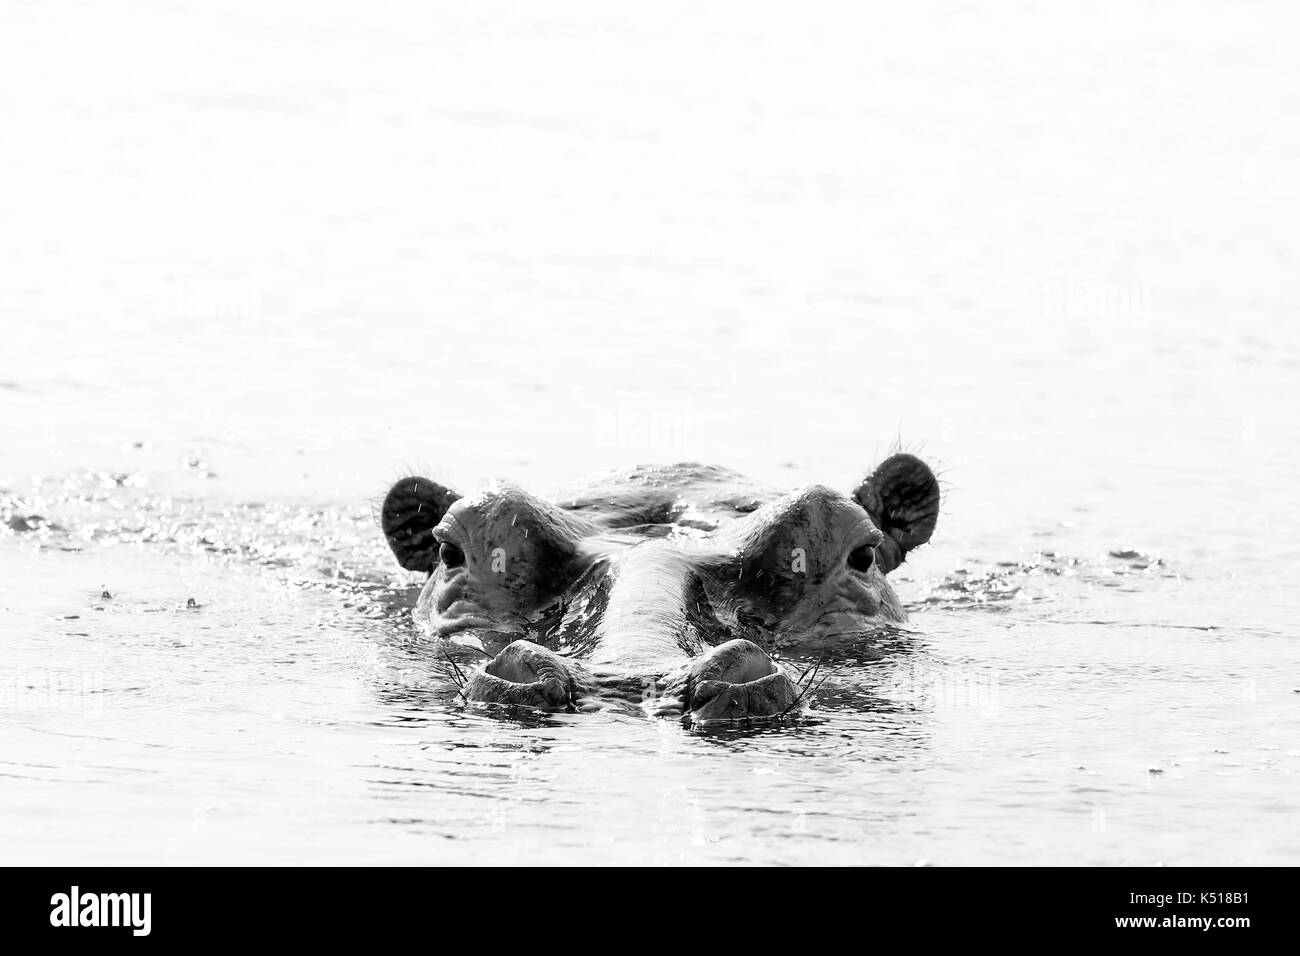 Flusspferd (Hippopotamus Amphibius) im Wasser, mit Blick auf die Oberfläche. Schwarz / weiß Bild. Lake Mburo, Uganda Stockfoto